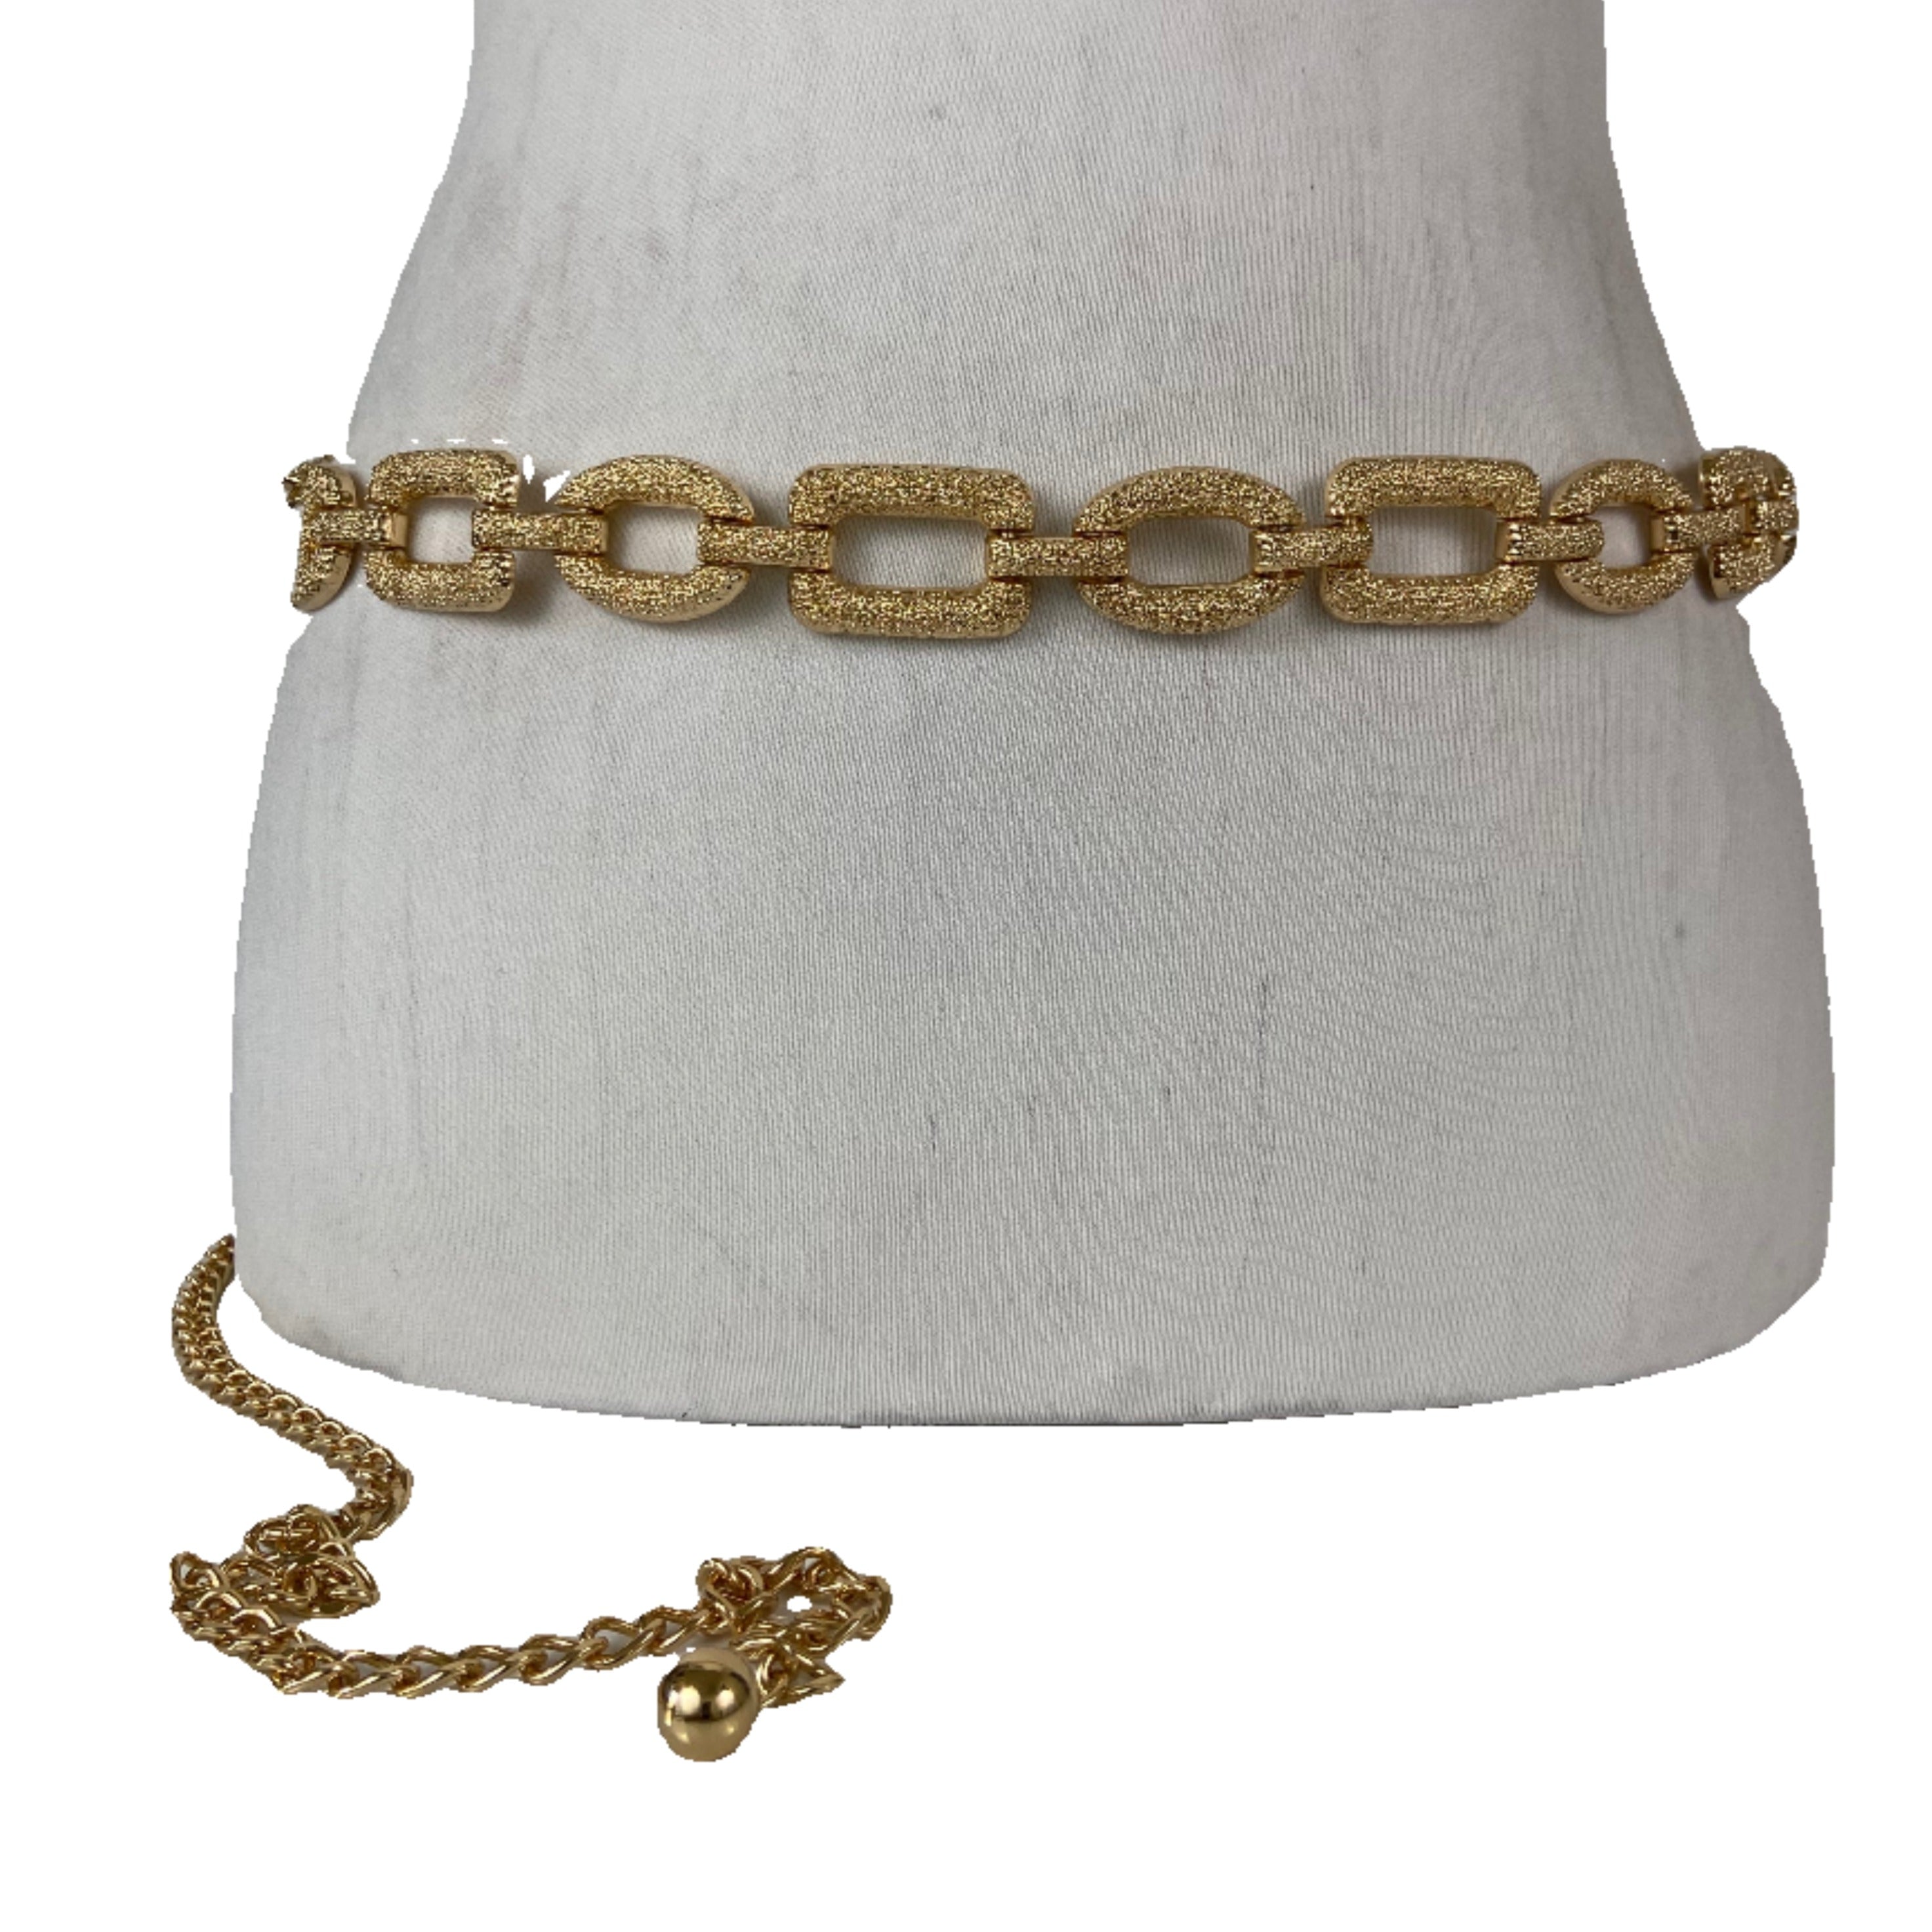 Gold waist chain belt